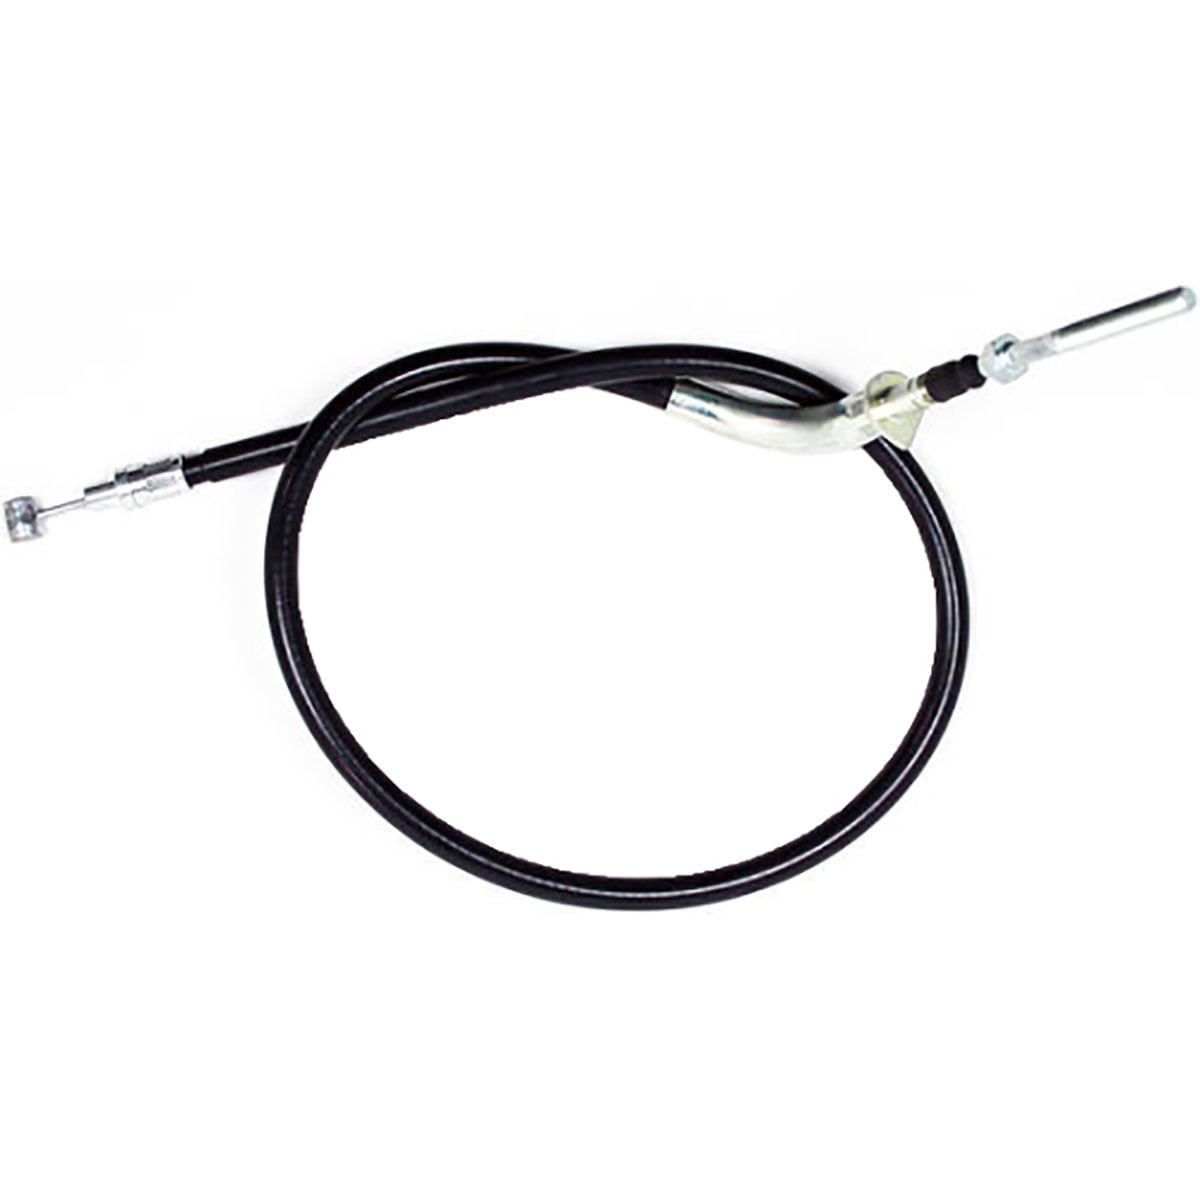 YAMAHA YFS 200 BLASTER 1988-2006 qualité Motion Pro Vinyle clutch cable 